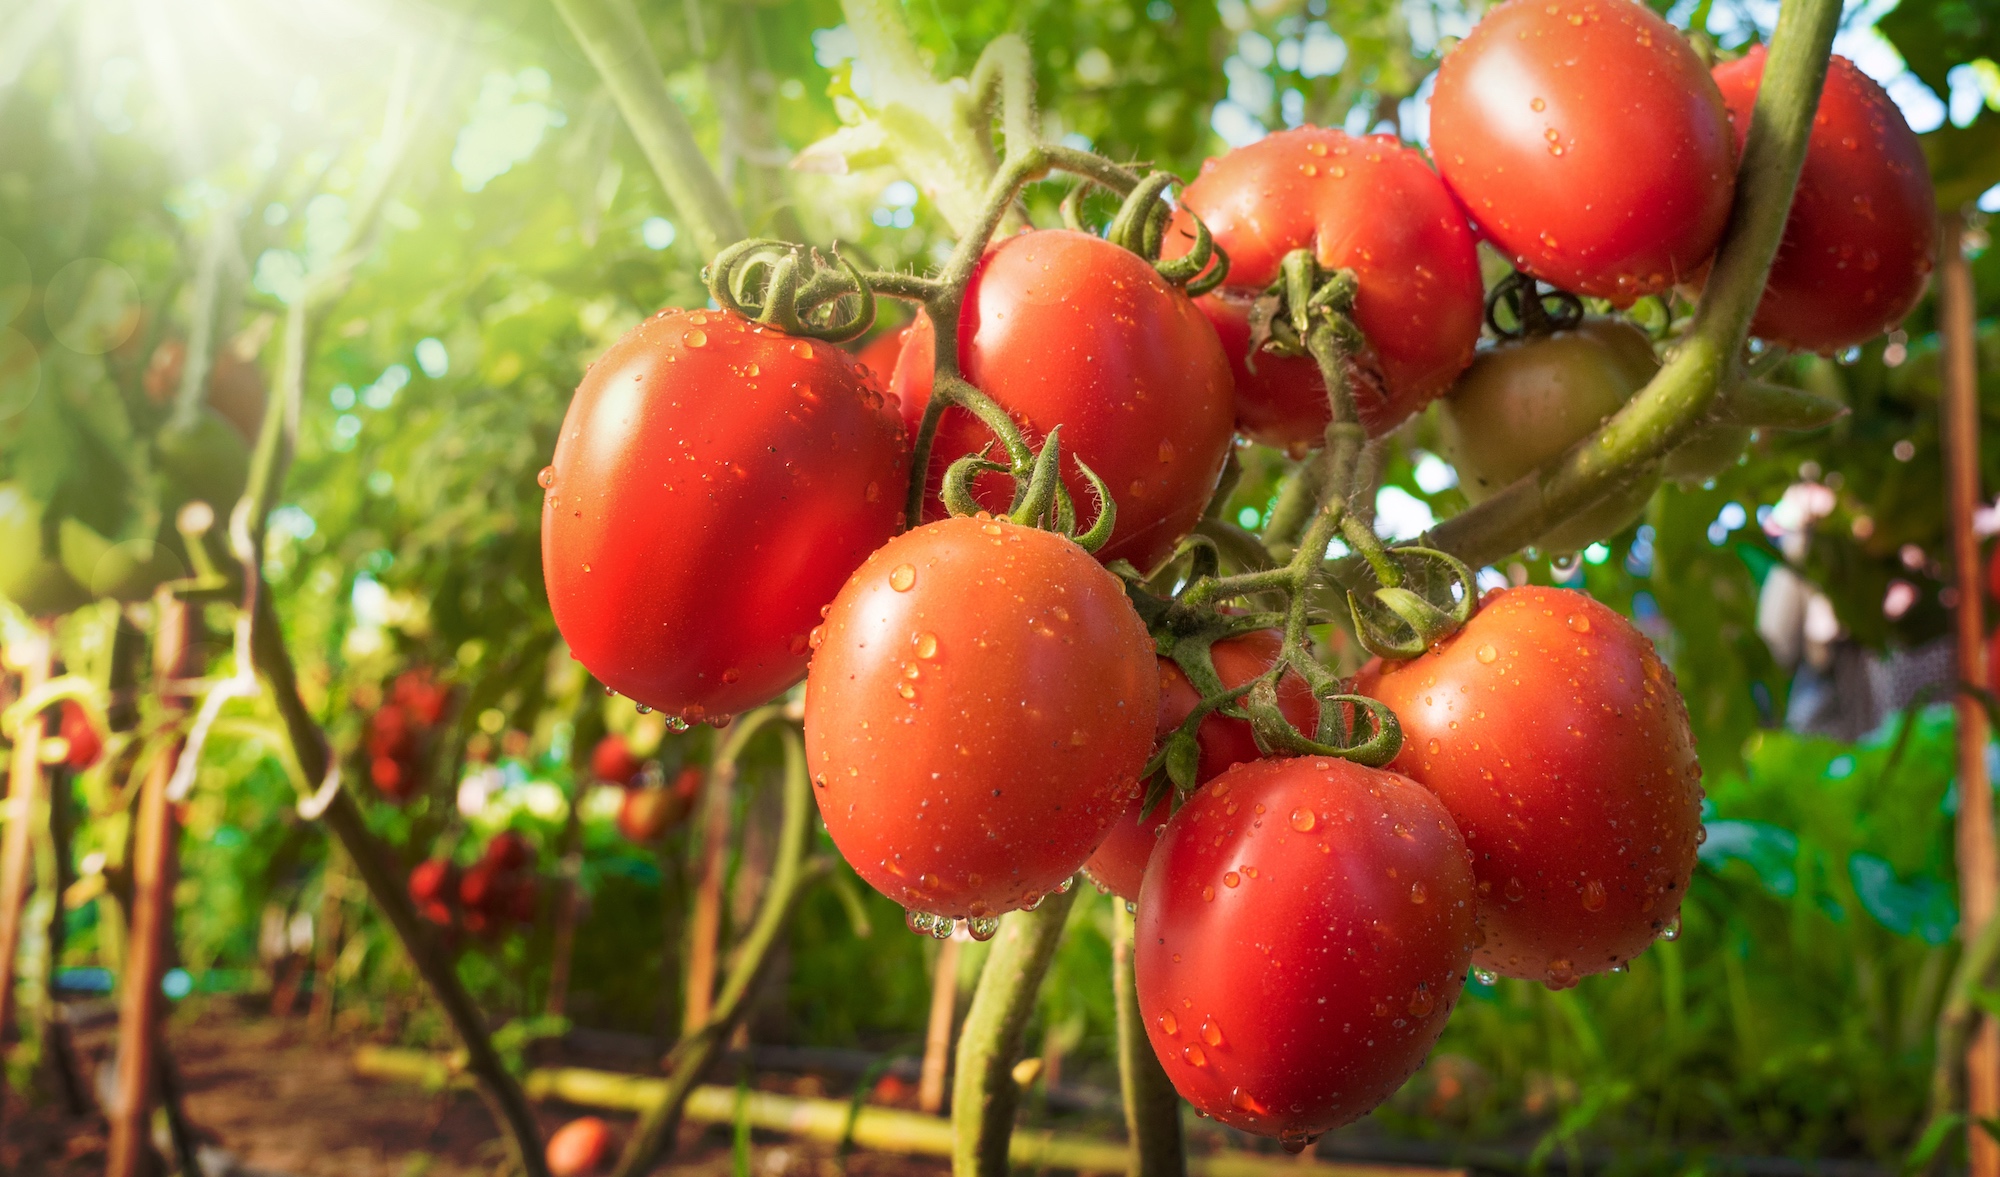 Les variétés de tomates vont de la petite tomate cerise à la grosse tomate coeur de boeuf. © singkham, fotolia